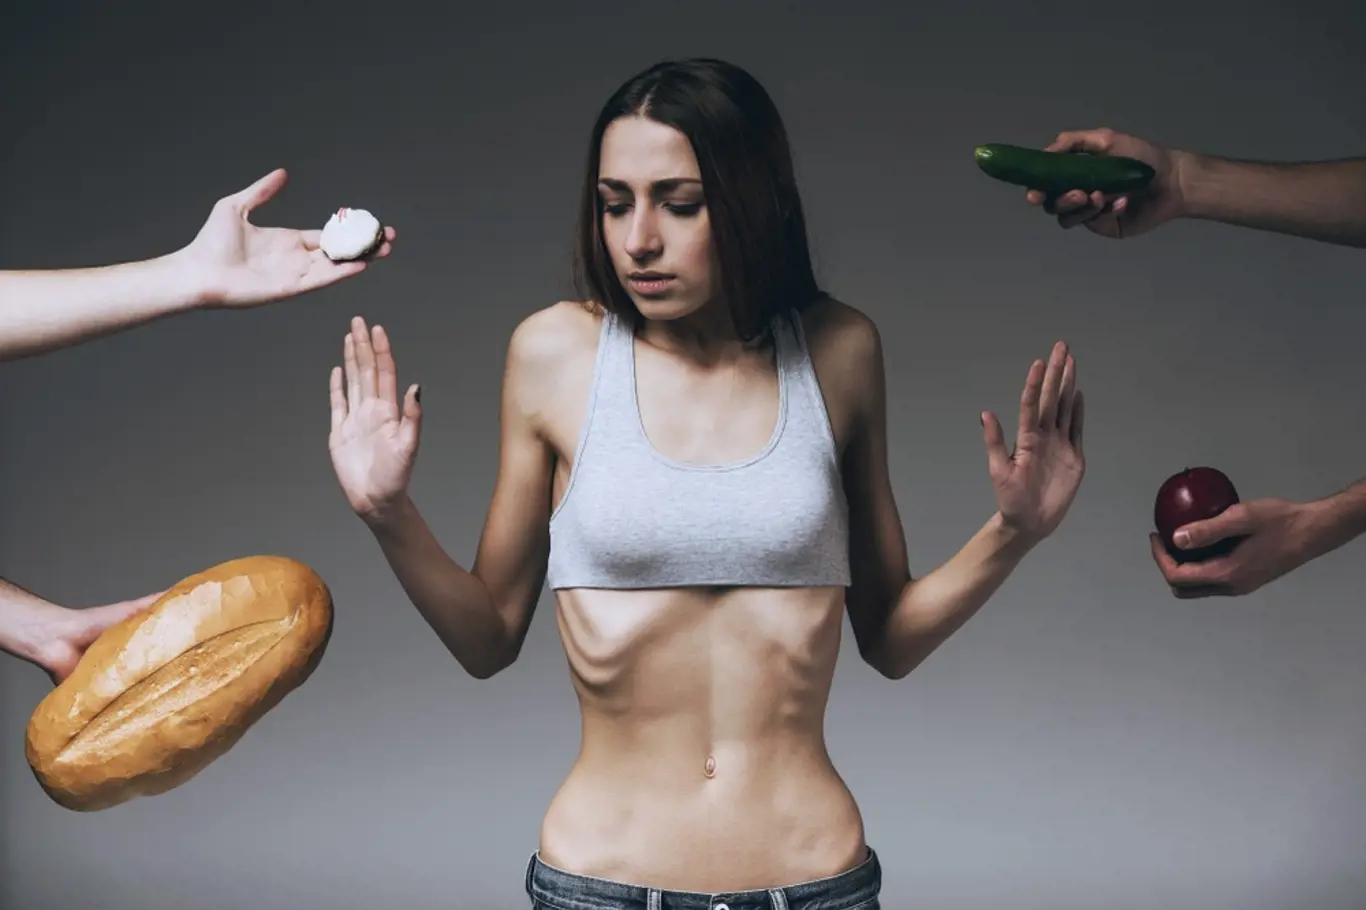 Boj s anorexií bývá náročný